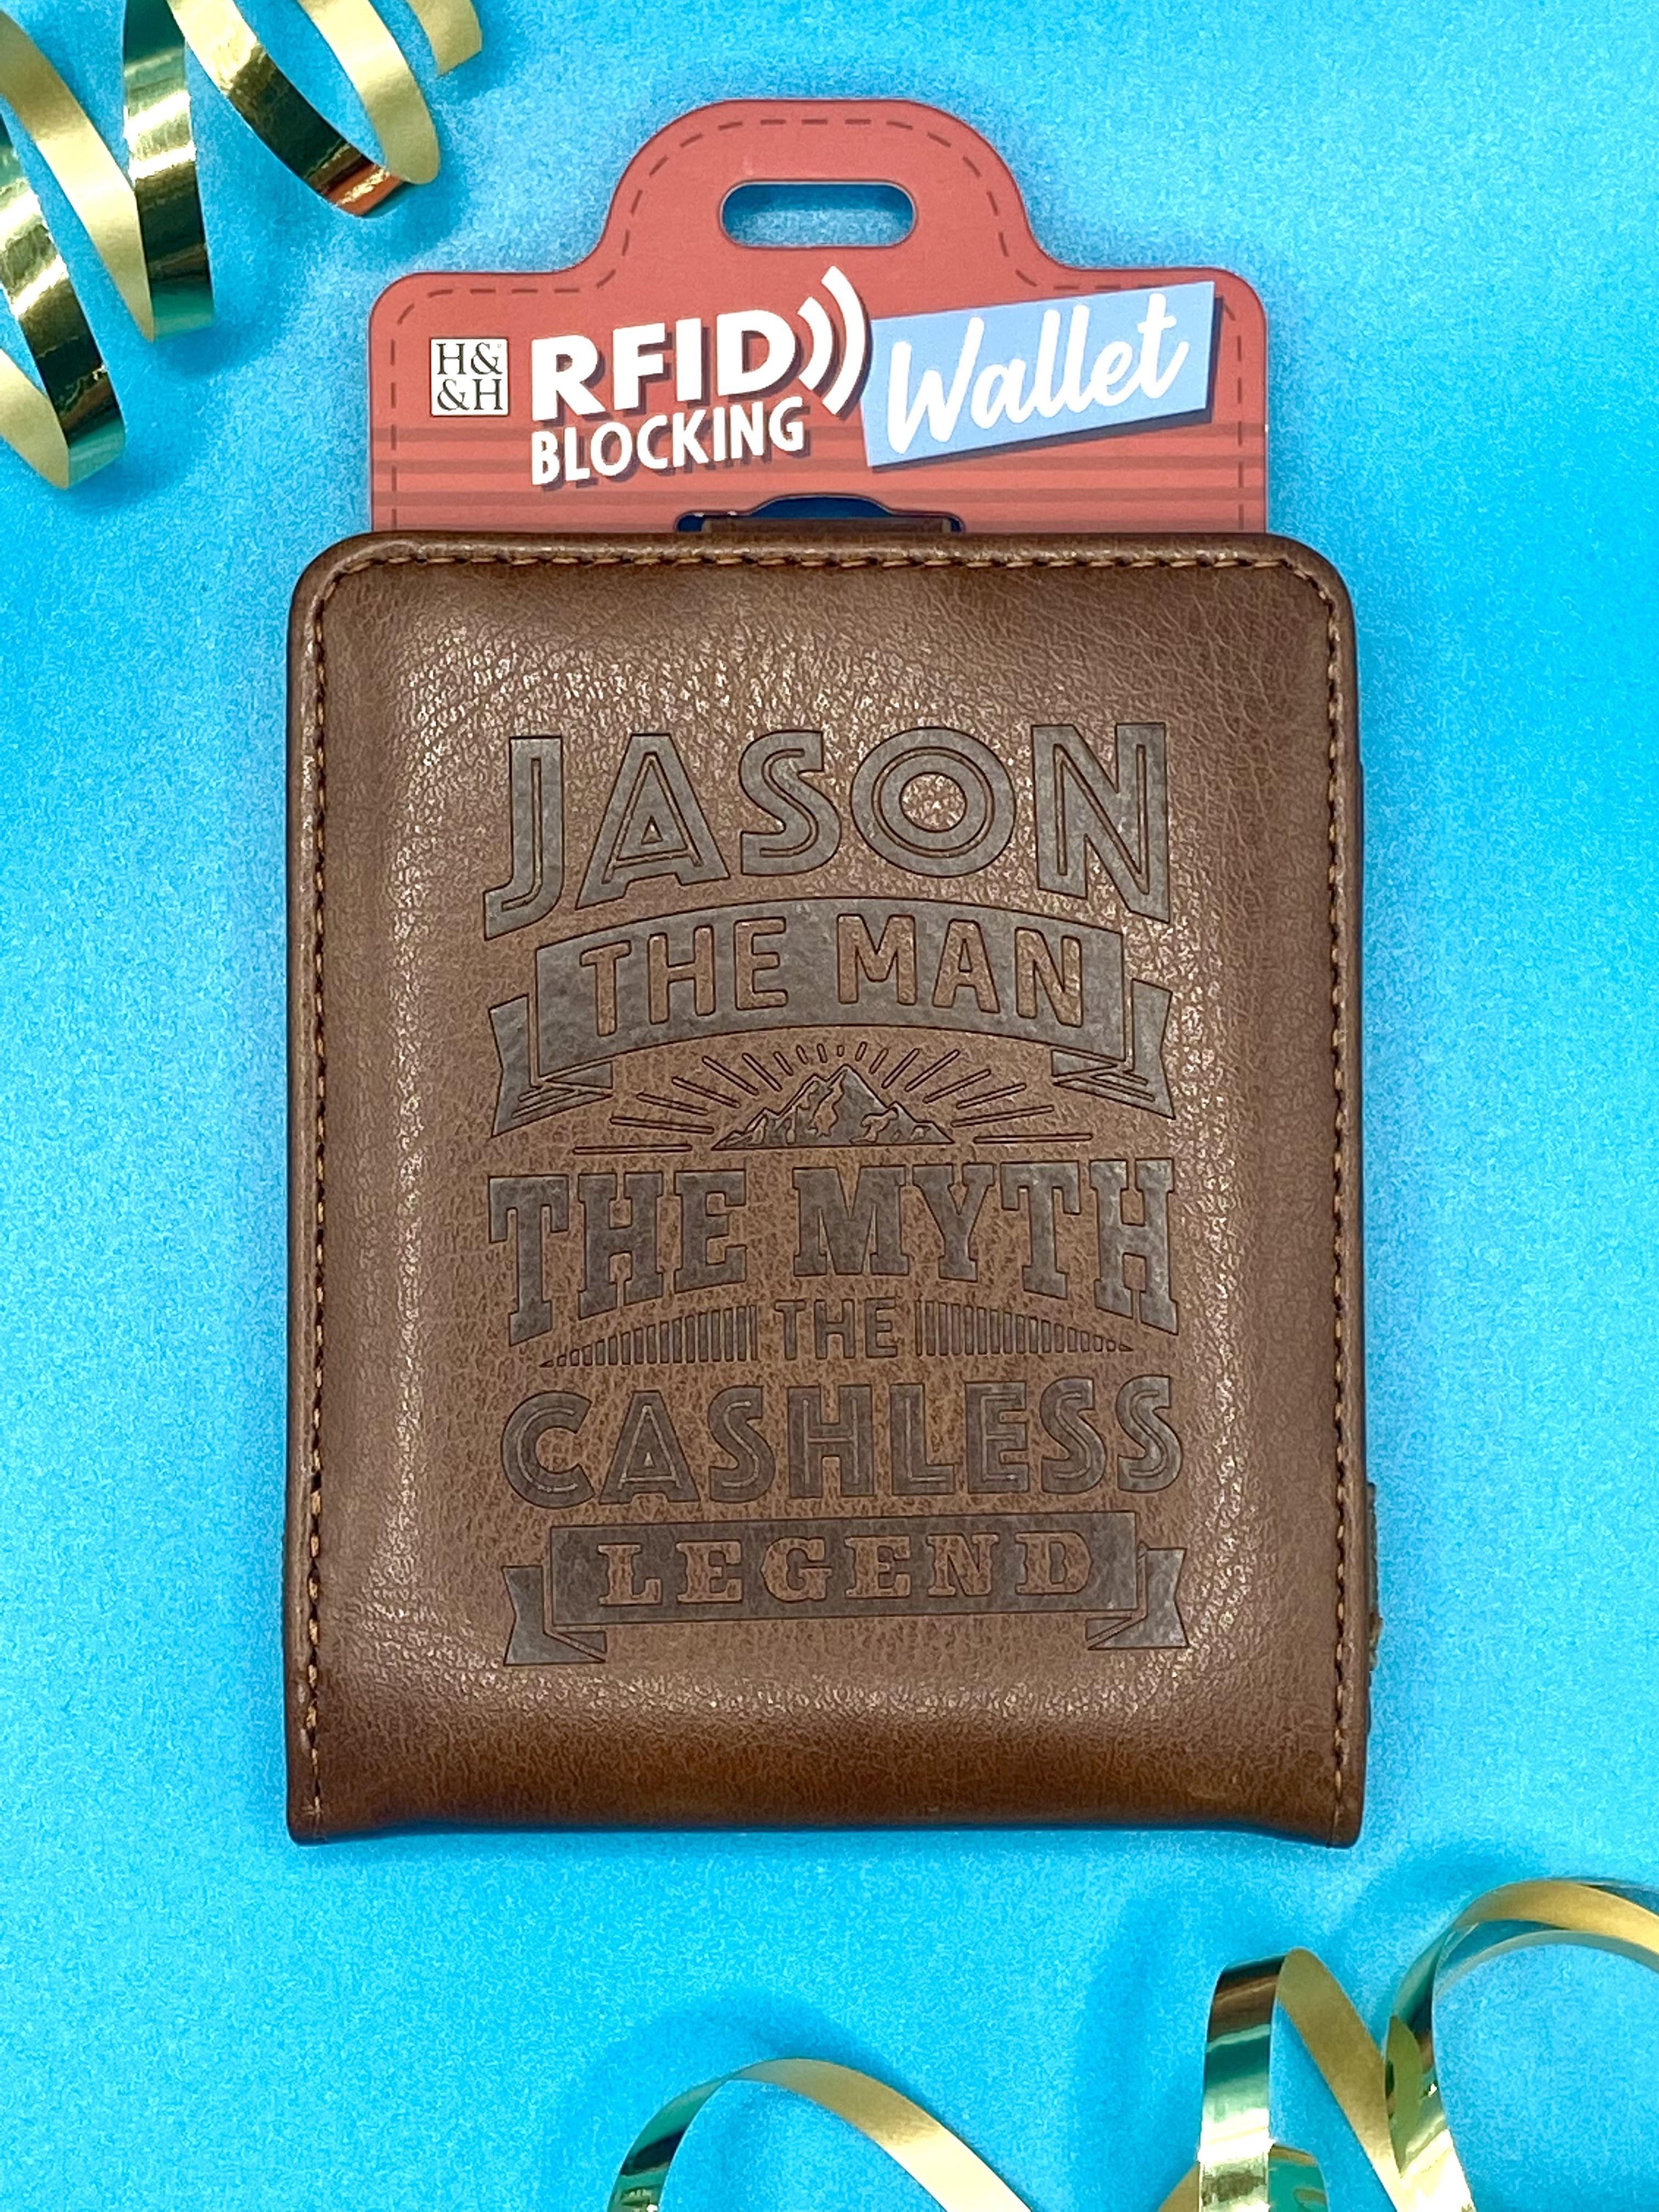 Jason RFID Blocking Wallet